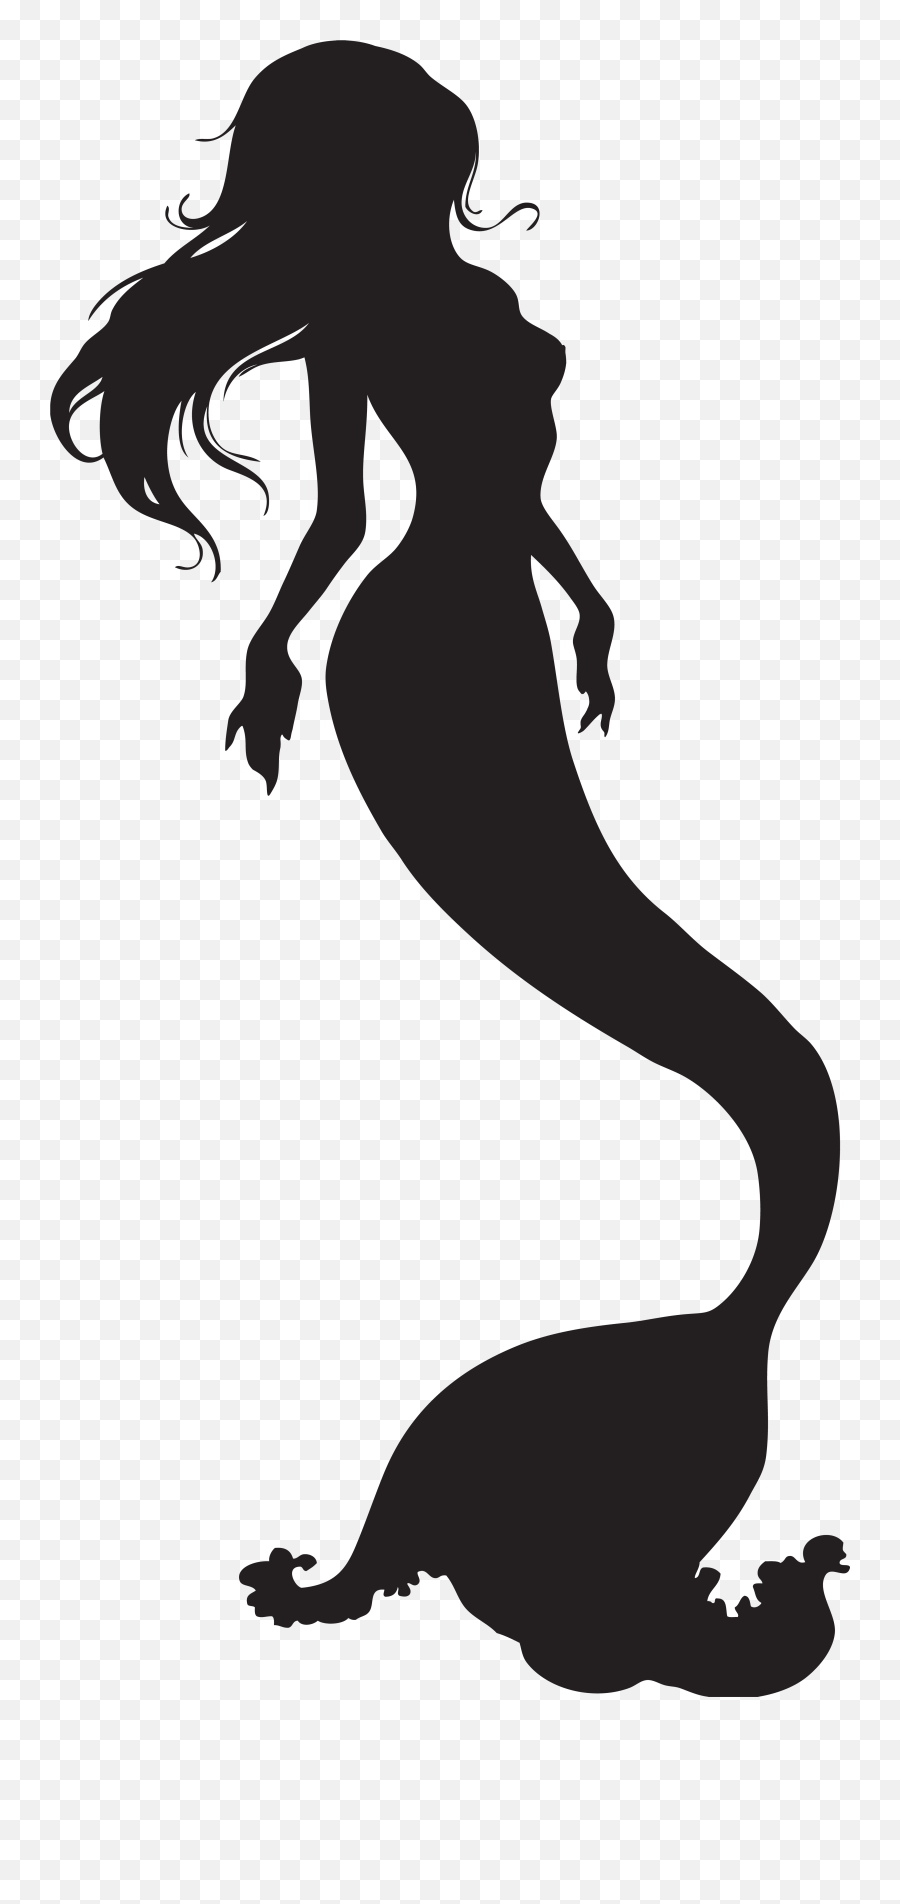 Mermaid Silhouette Clip Art - Mermaid Clipart Transparent Background Png,Mermaid Transparent Background